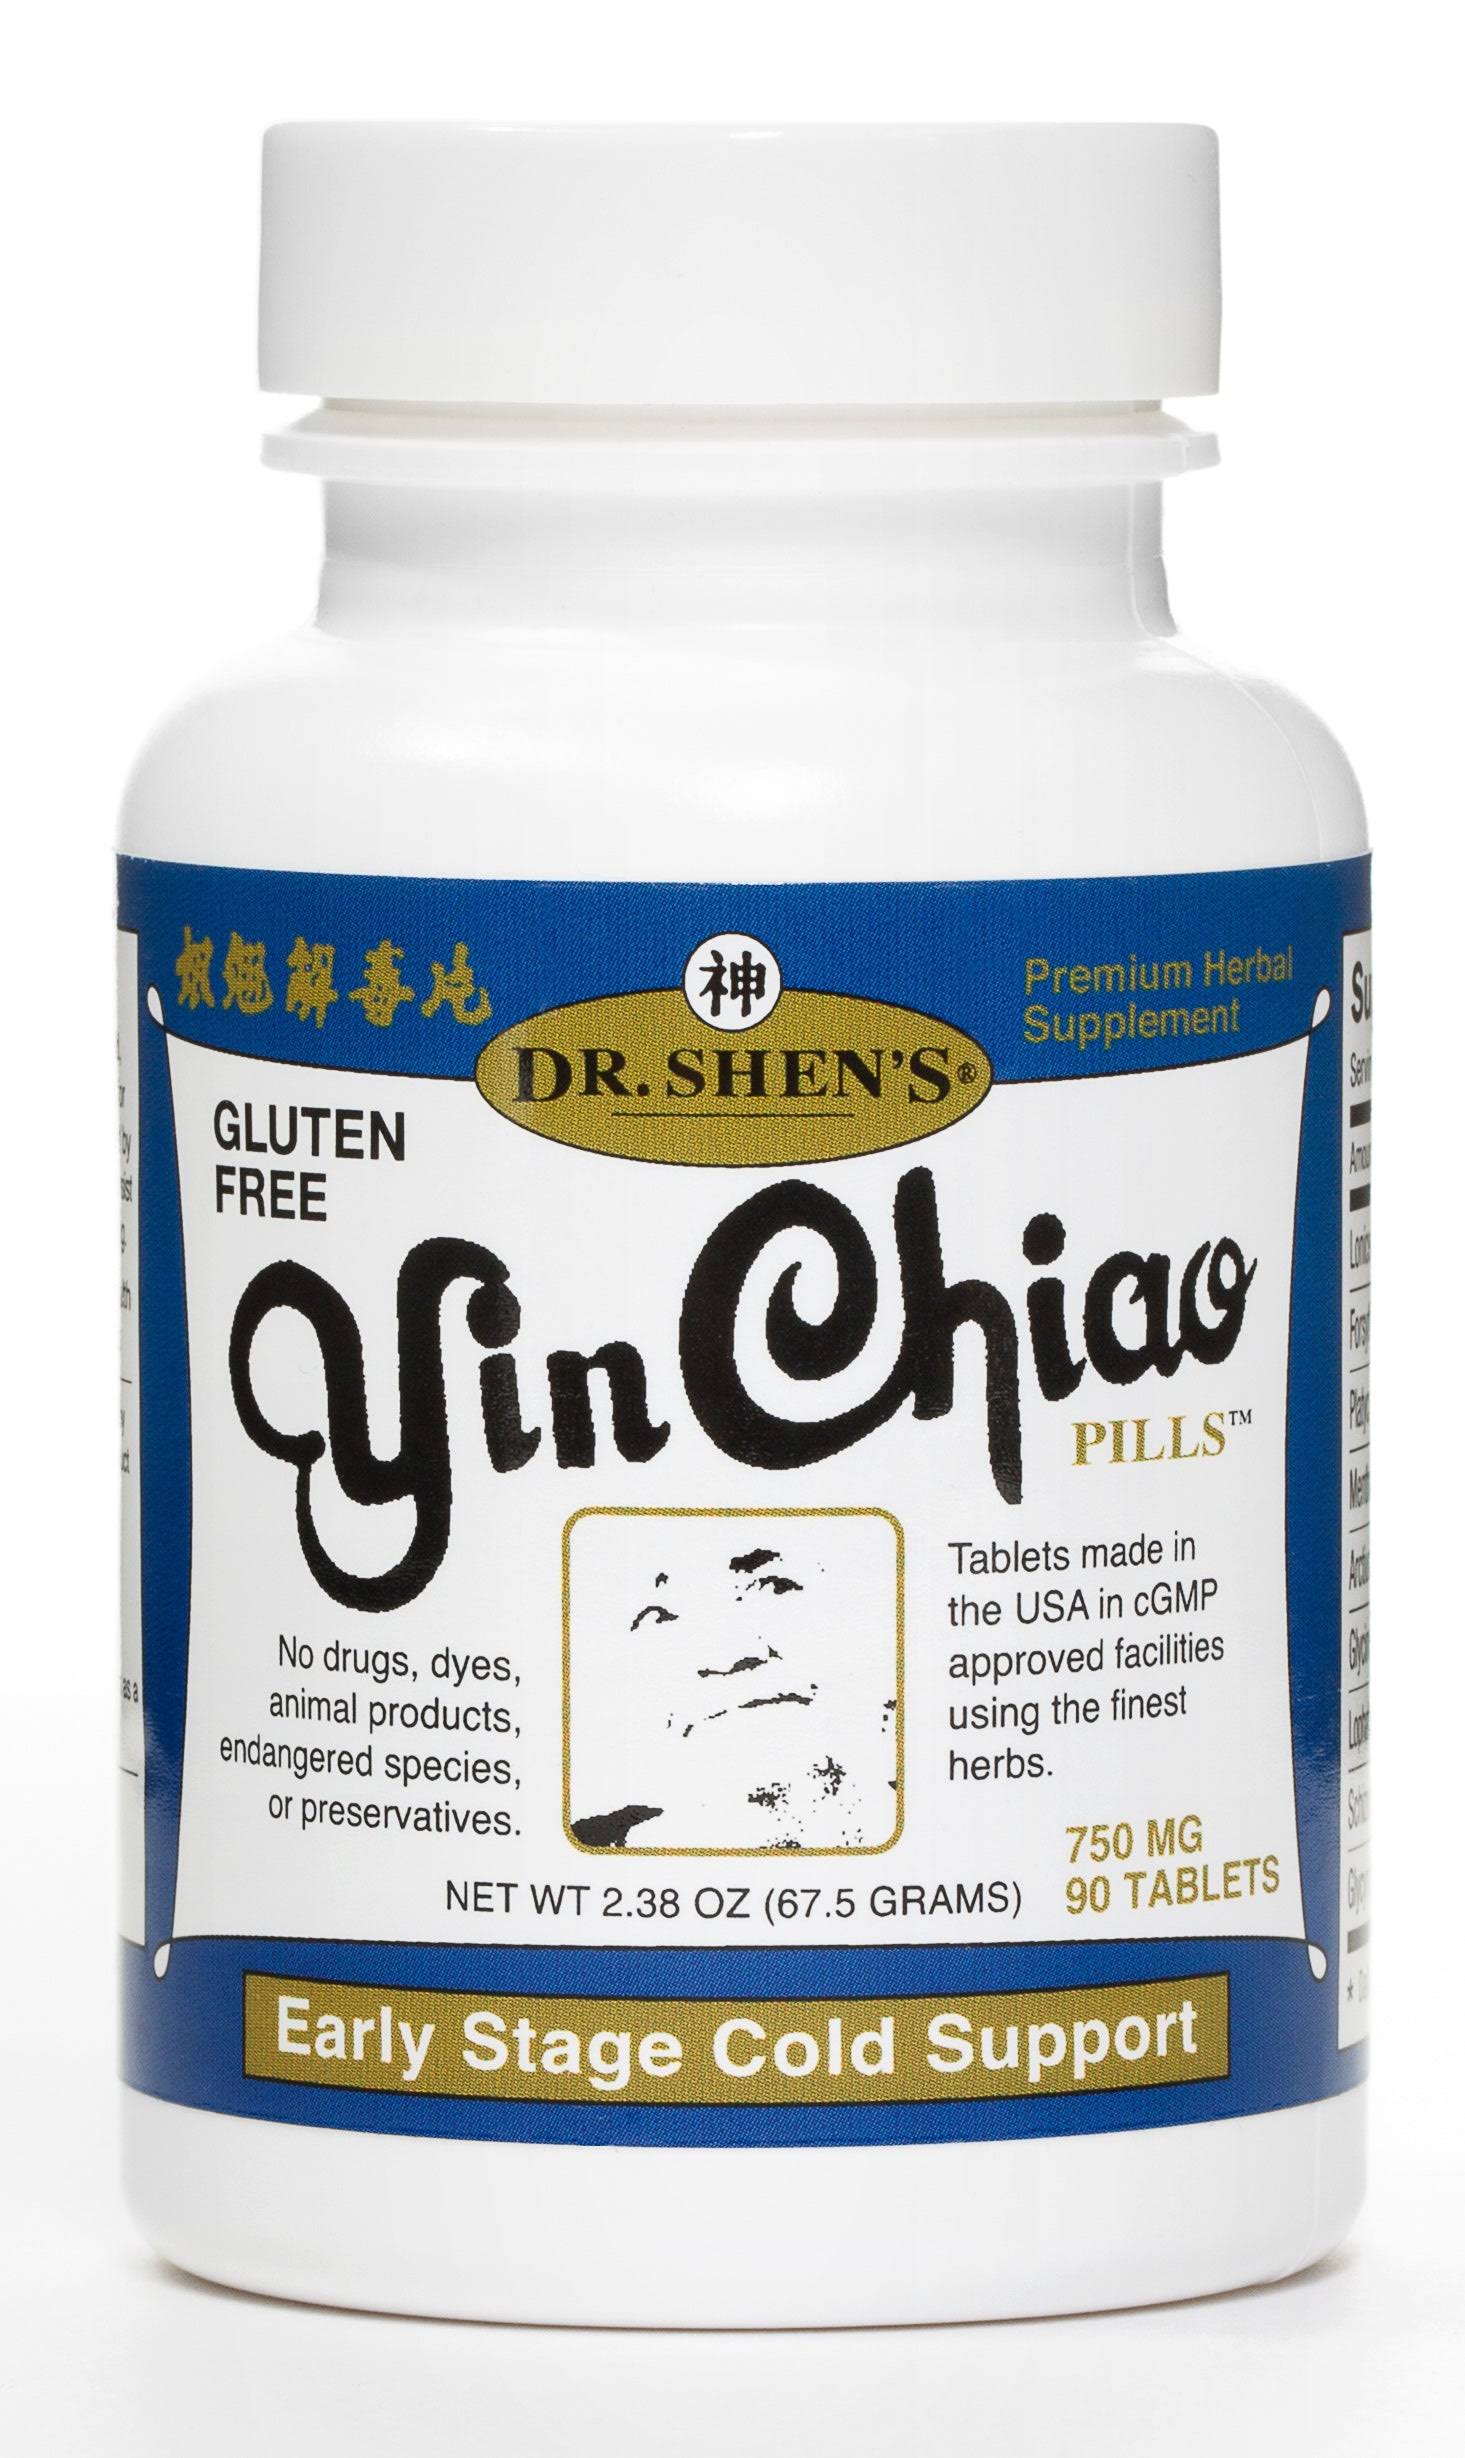 Dr. Shen's Yin Chiao Pills 750mg Tablets - x90